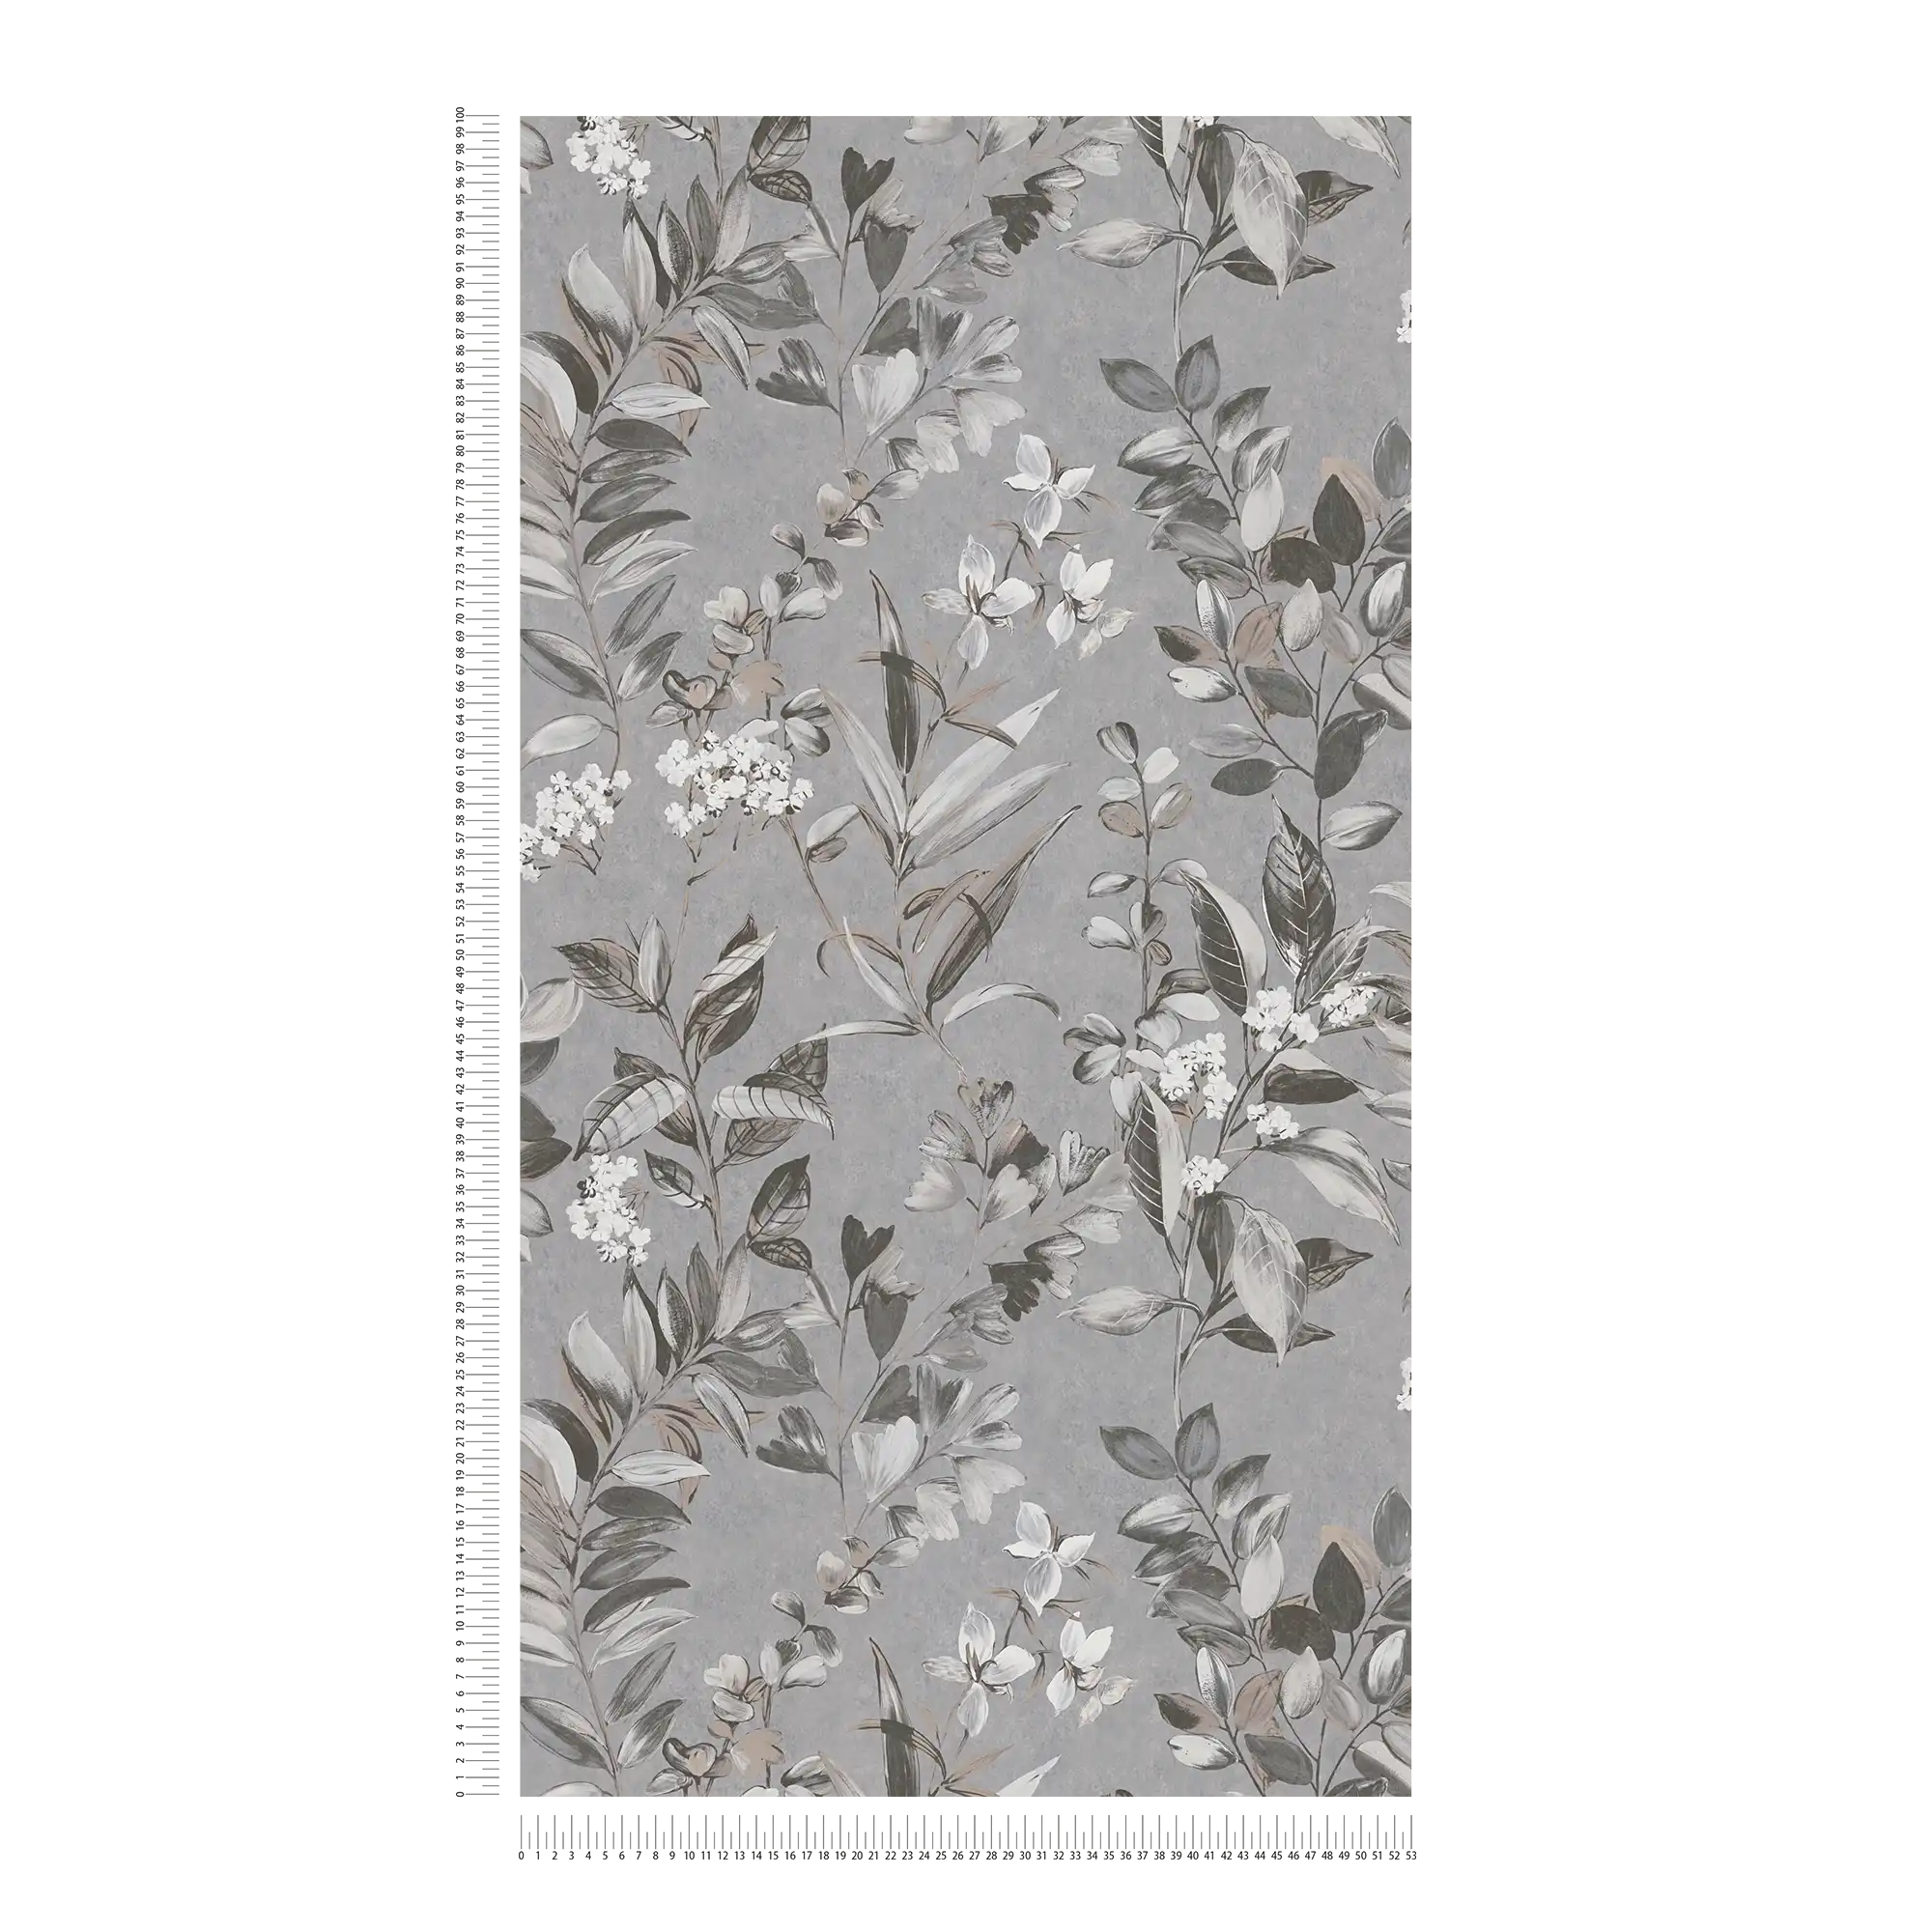             Vliesbehang met bloemenmotief - grijs, wit, zwart
        